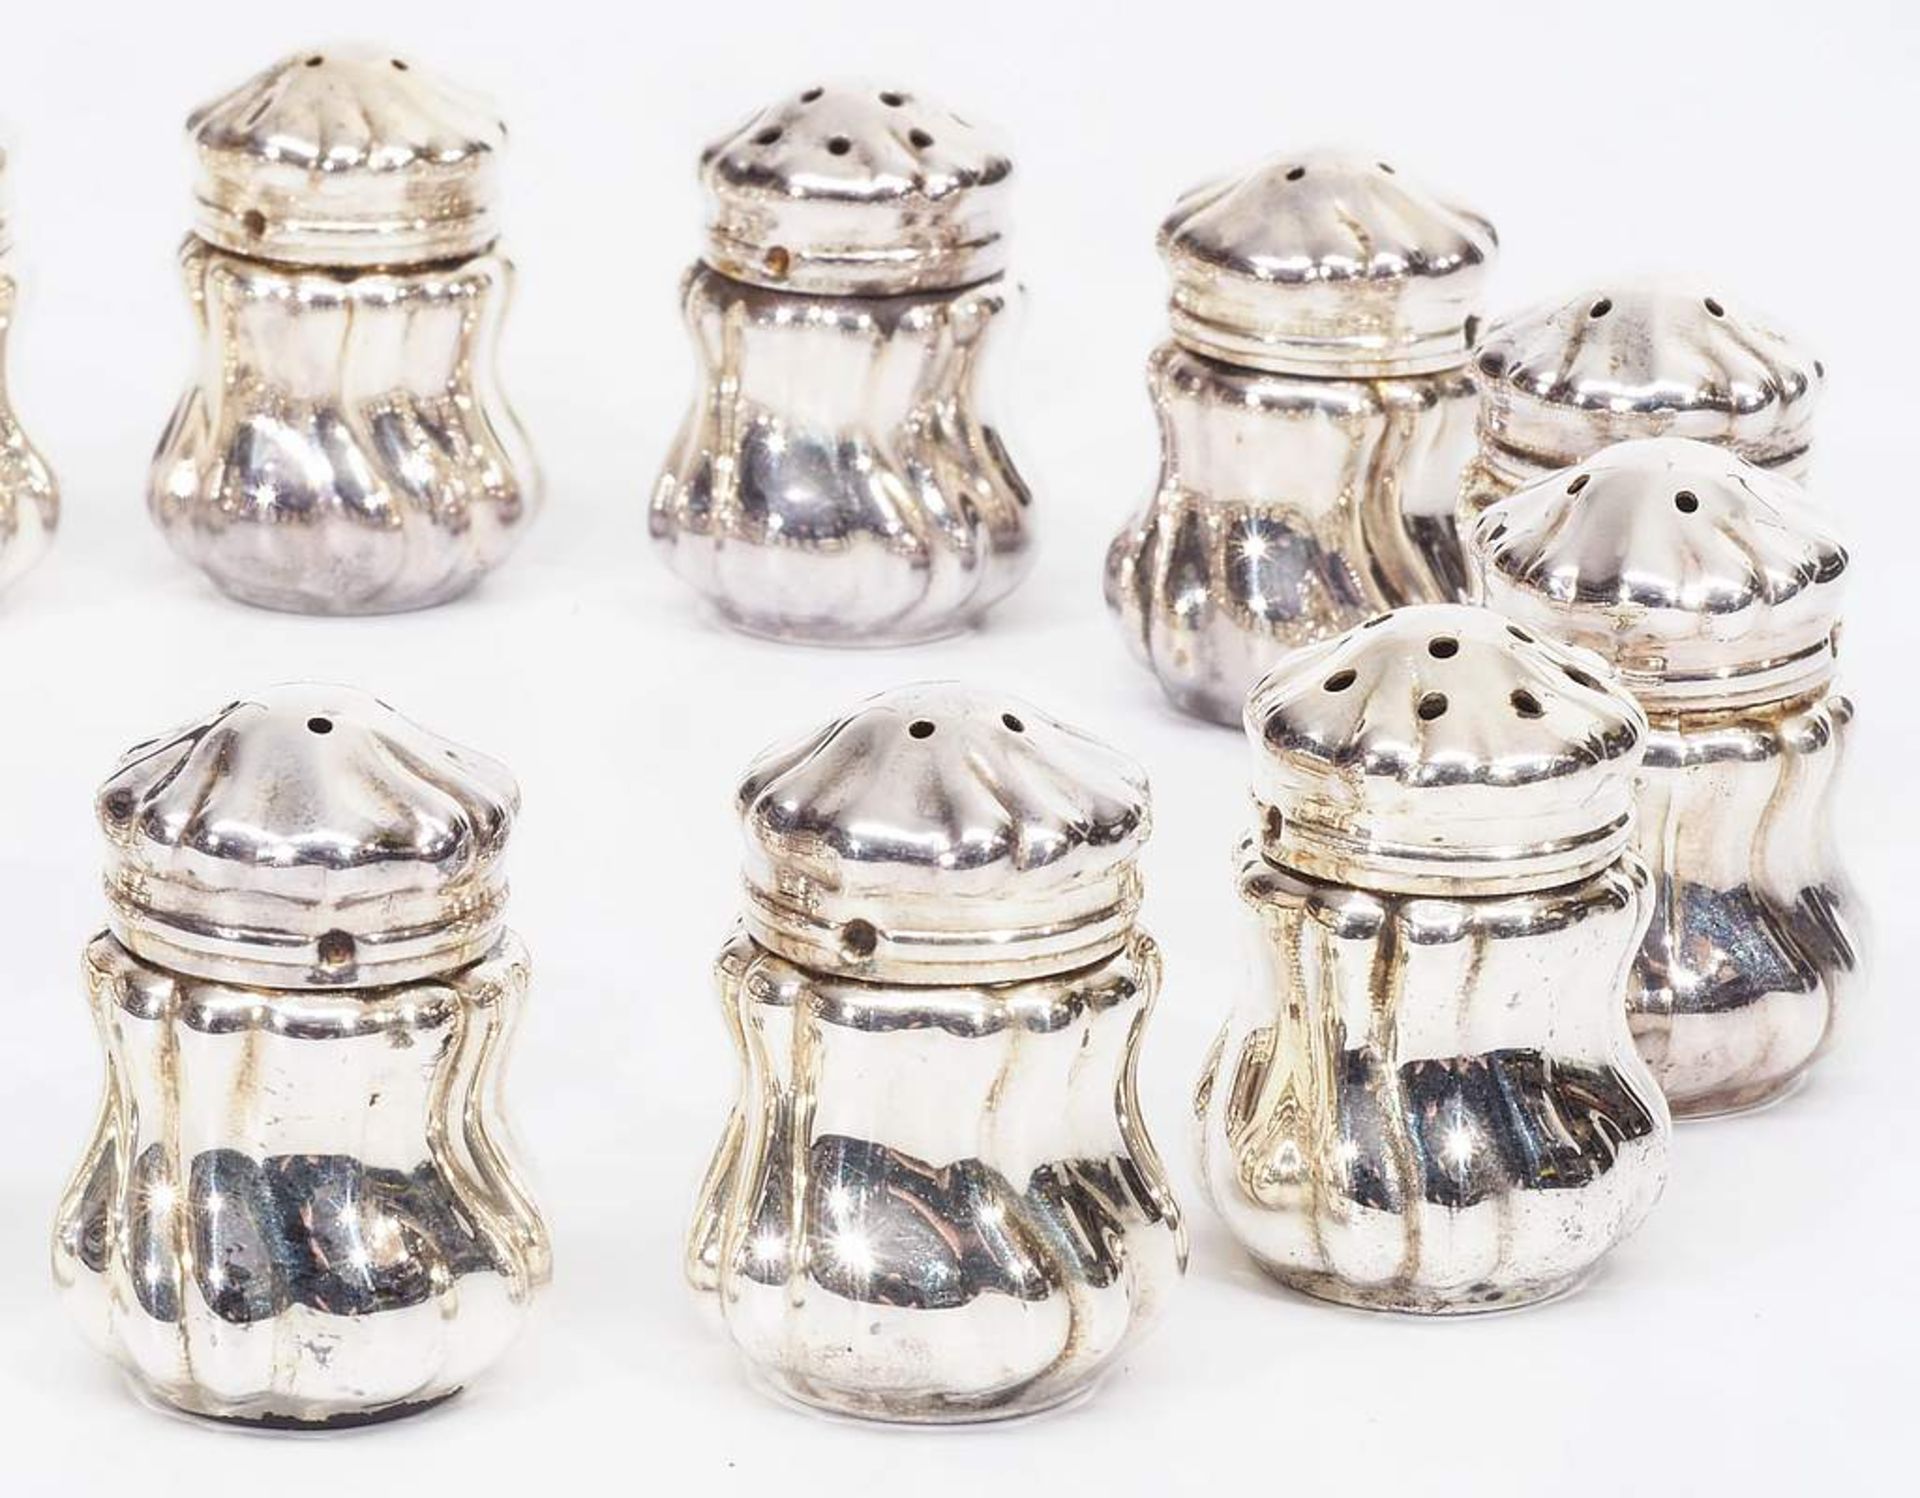 Miniatur-Gewürzstreuer, 925er Silber. Miniatur-Gewürzstreuer, 925er Silber. Insgesamt 15 Stück. - Image 4 of 6